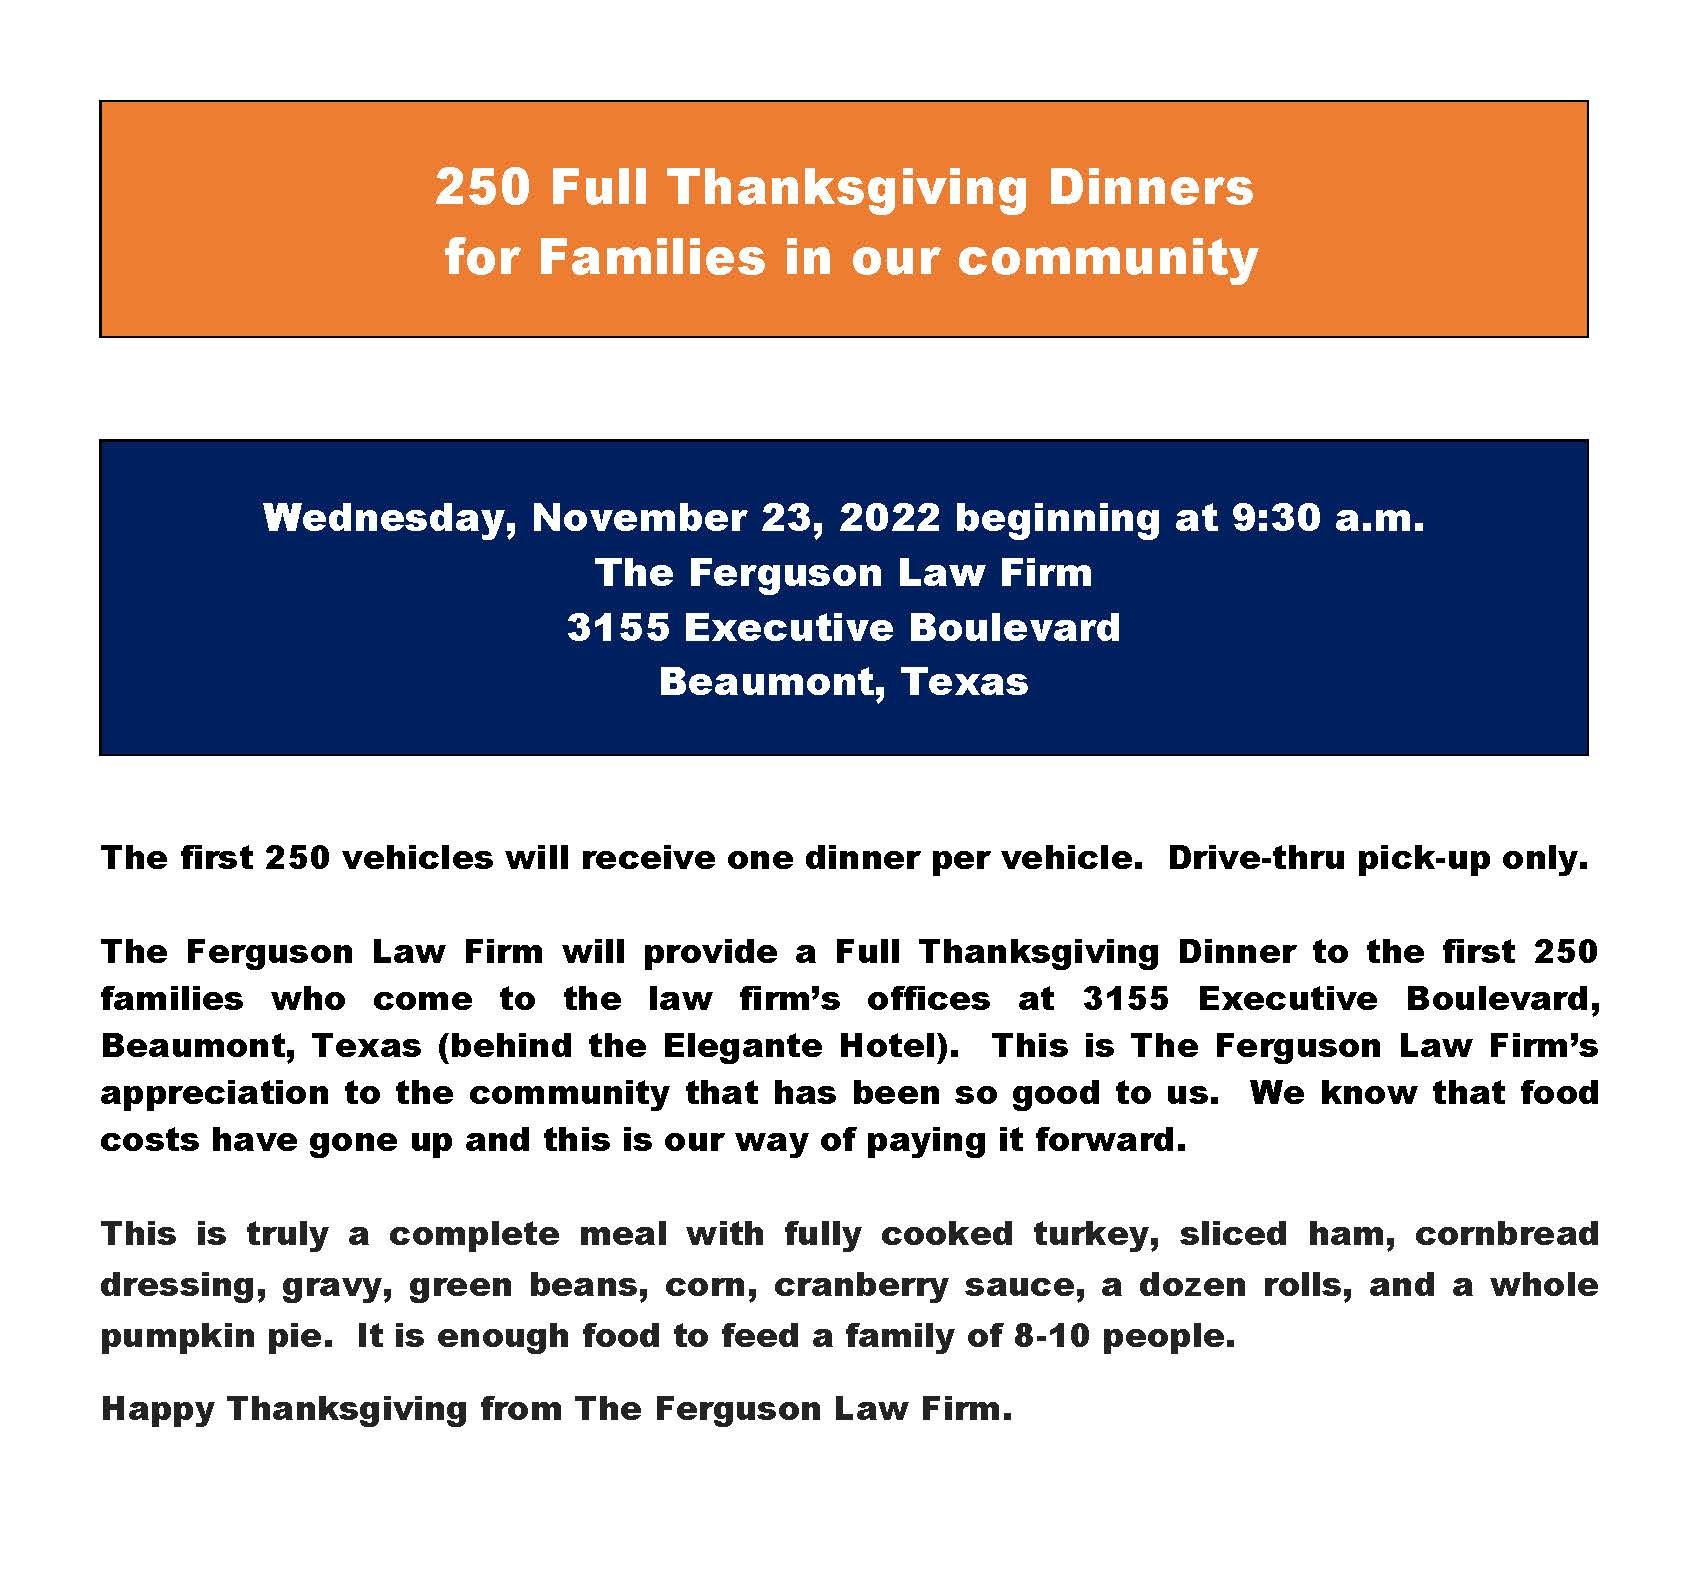 250 Full Thanksgiving Dinners Flyer